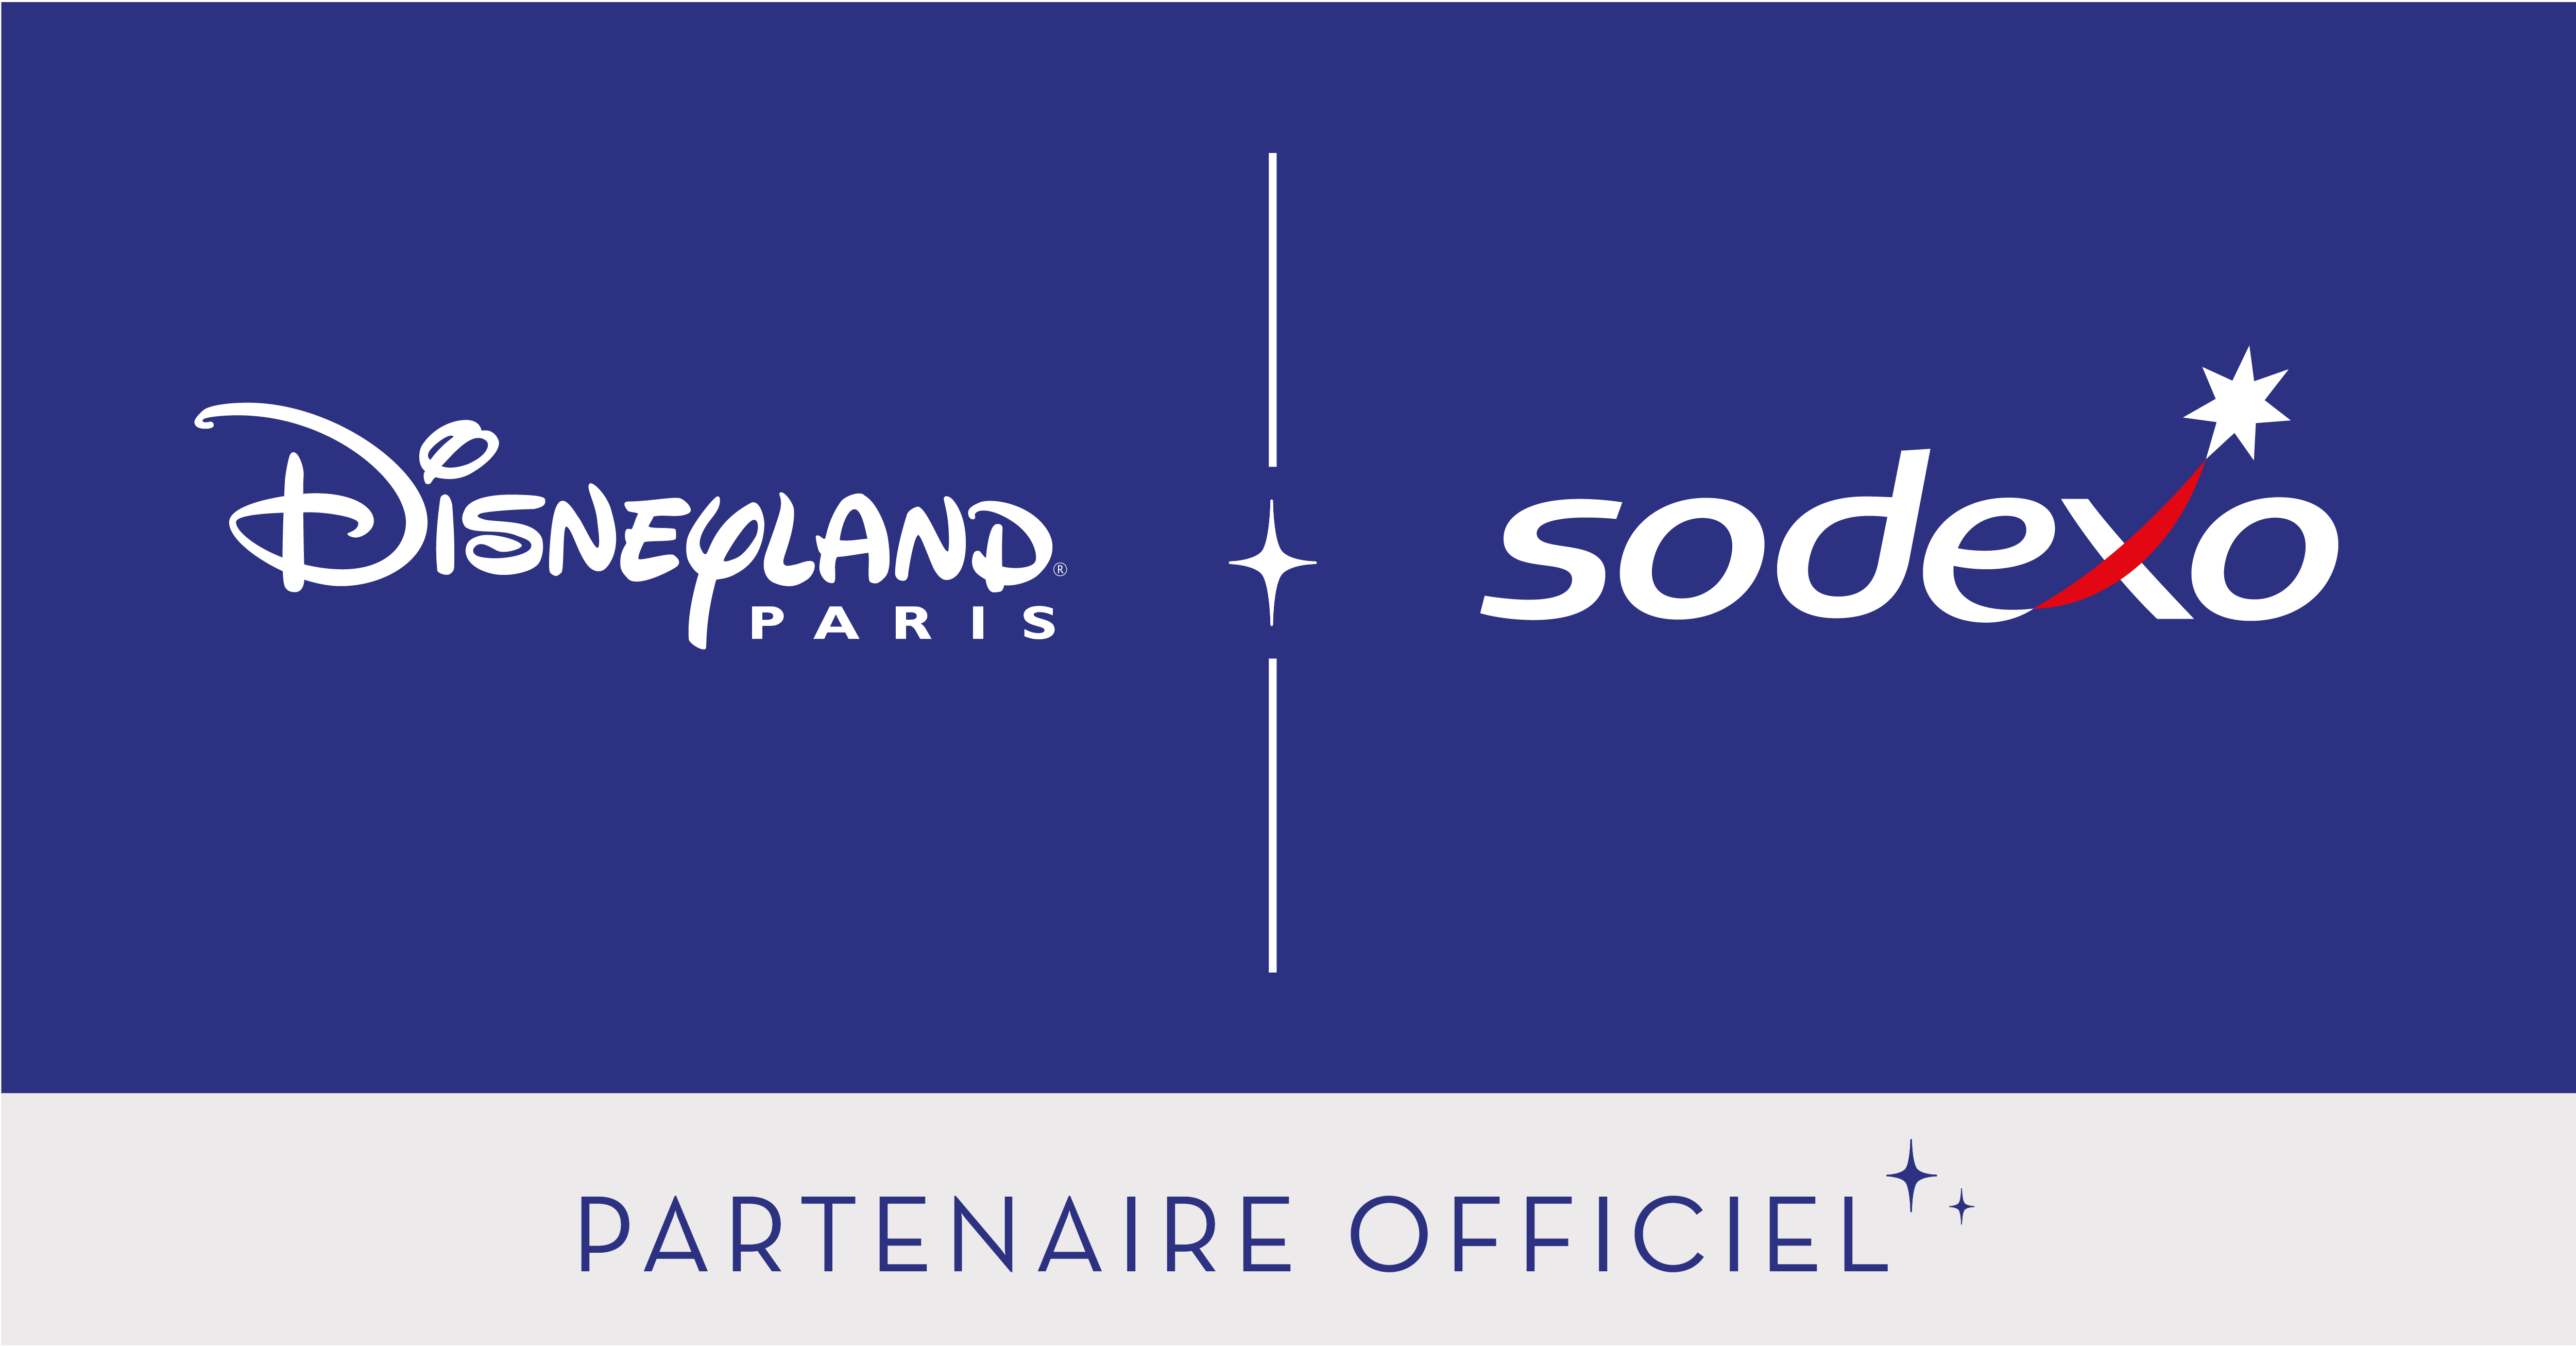 Sodexo devient le Partenaire Officiel de Disneyland® Paris et servira près de 2,5 millions de repas par an aux Cast Members* de la destination.